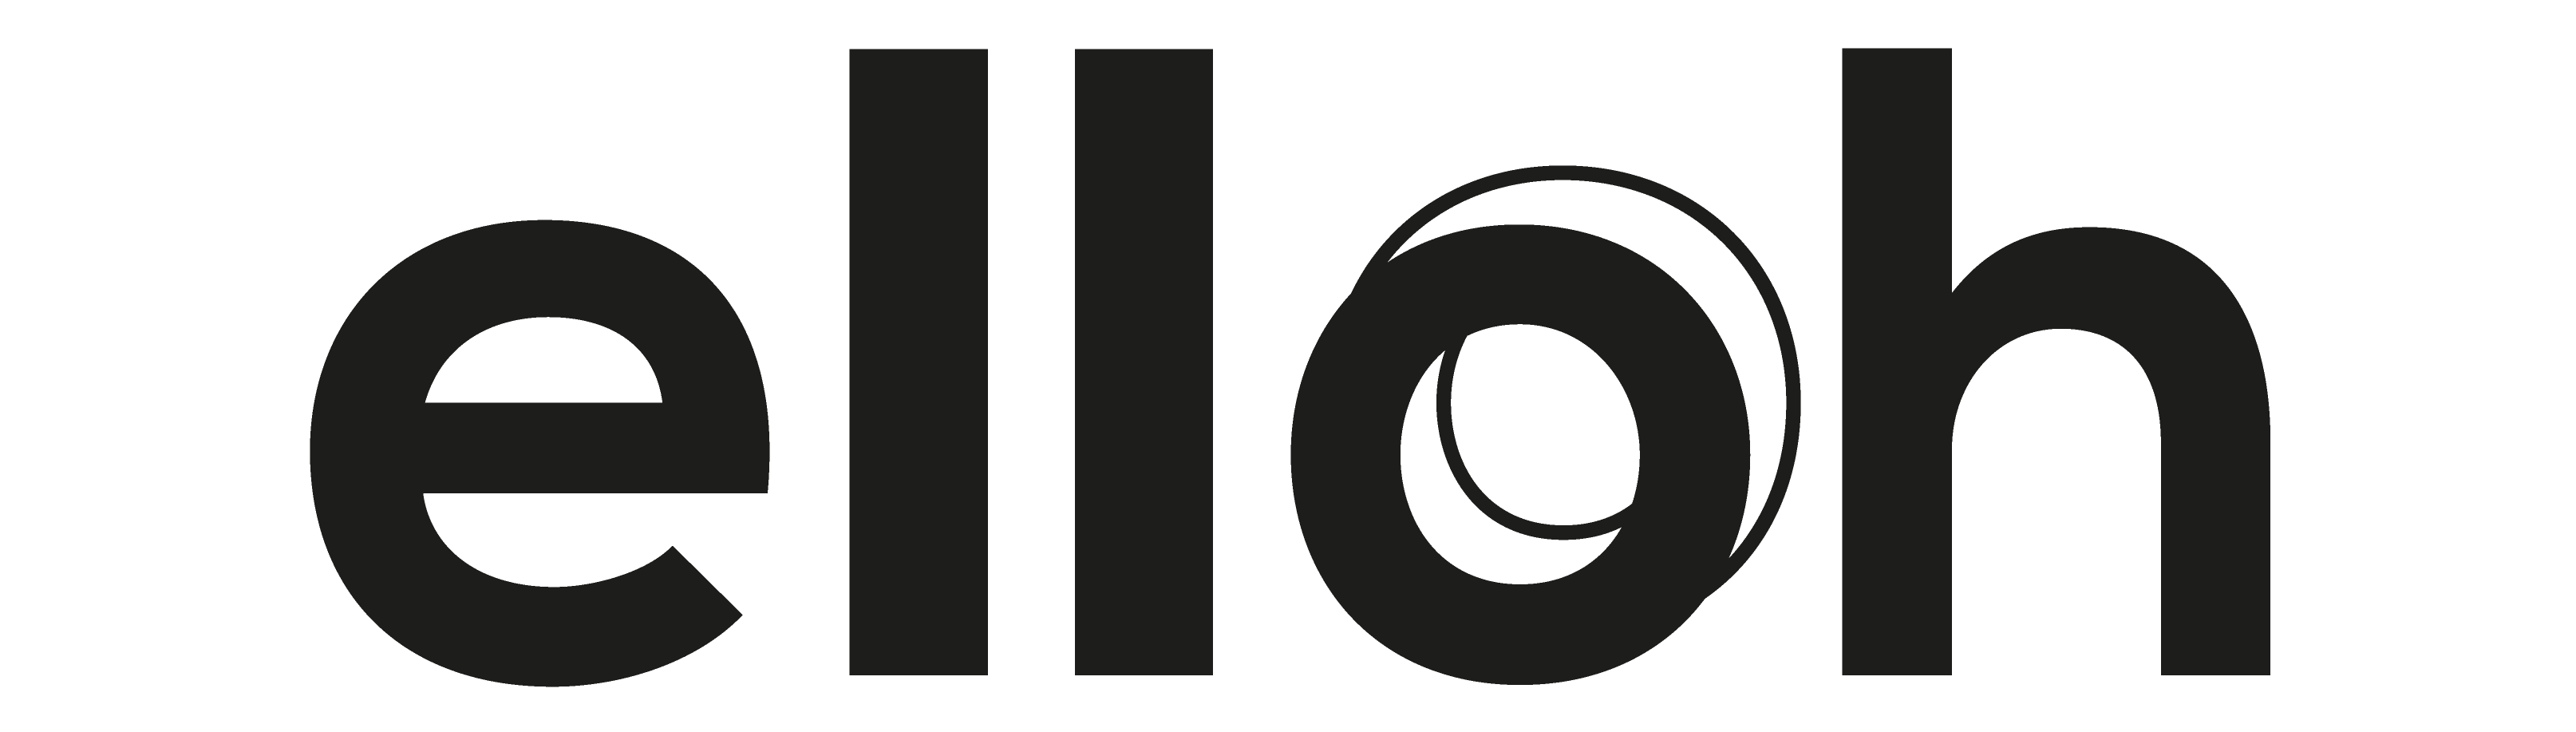 Logo Elloh png-08 - Copie (2)